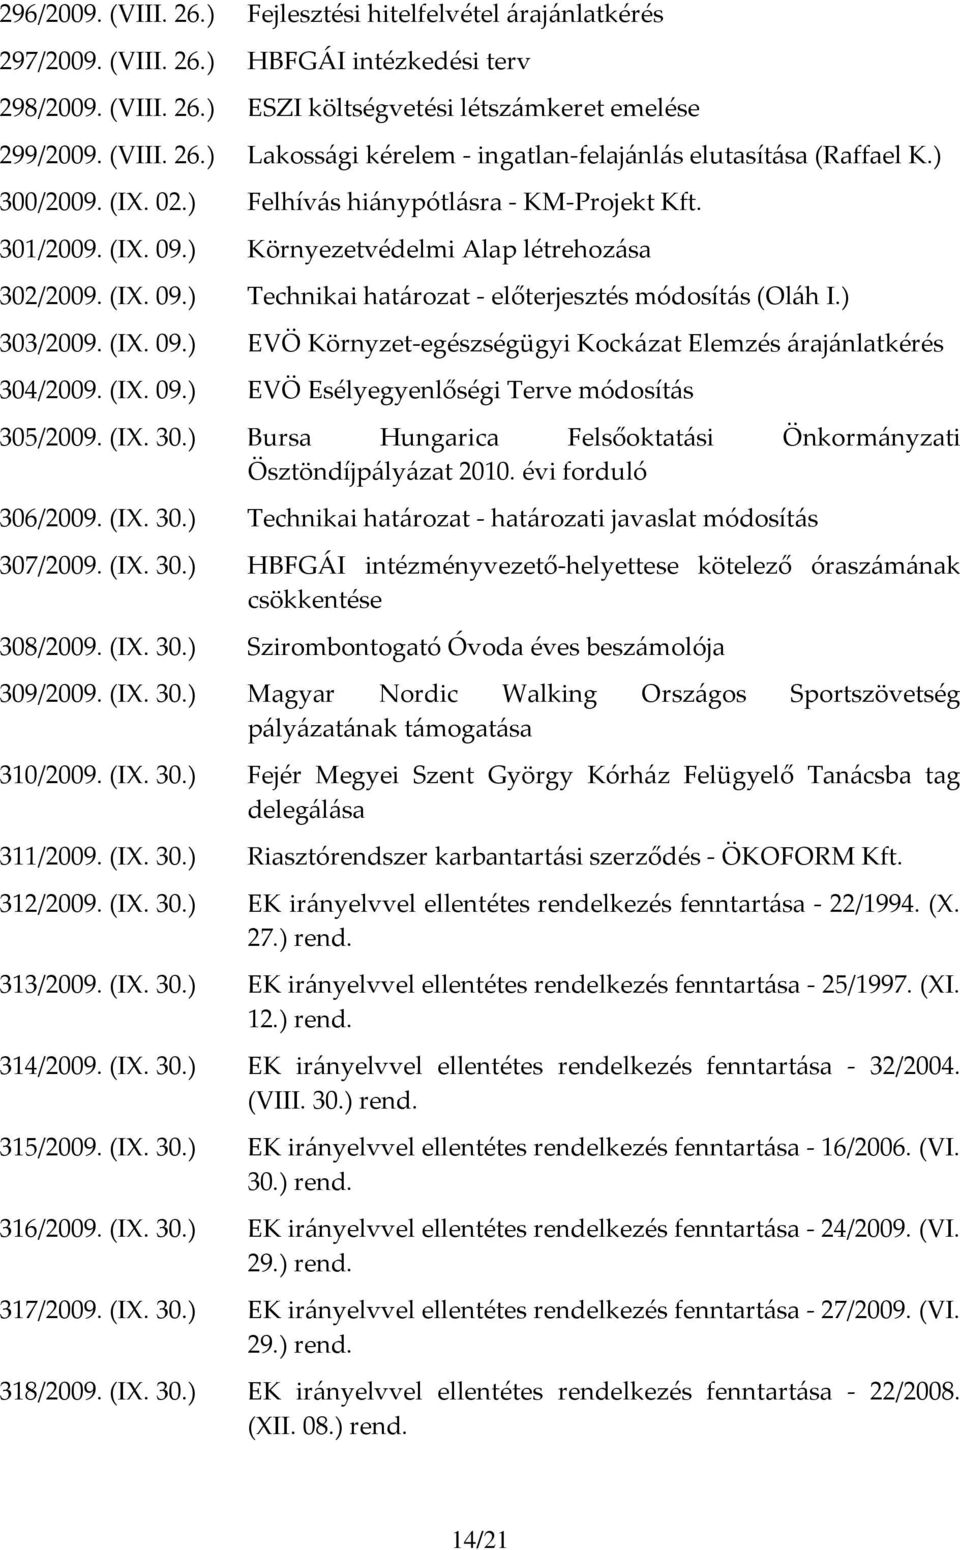 ) 303/2009. (IX. 09.) EVÖ Környzet-egészségügyi Kockázat Elemzés árajánlatkérés 304/2009. (IX. 09.) EVÖ Esélyegyenlőségi Terve módosítás 305/2009. (IX. 30.) Bursa Hungarica Felsőoktatási Önkormányzati Ösztöndíjpályázat 2010.